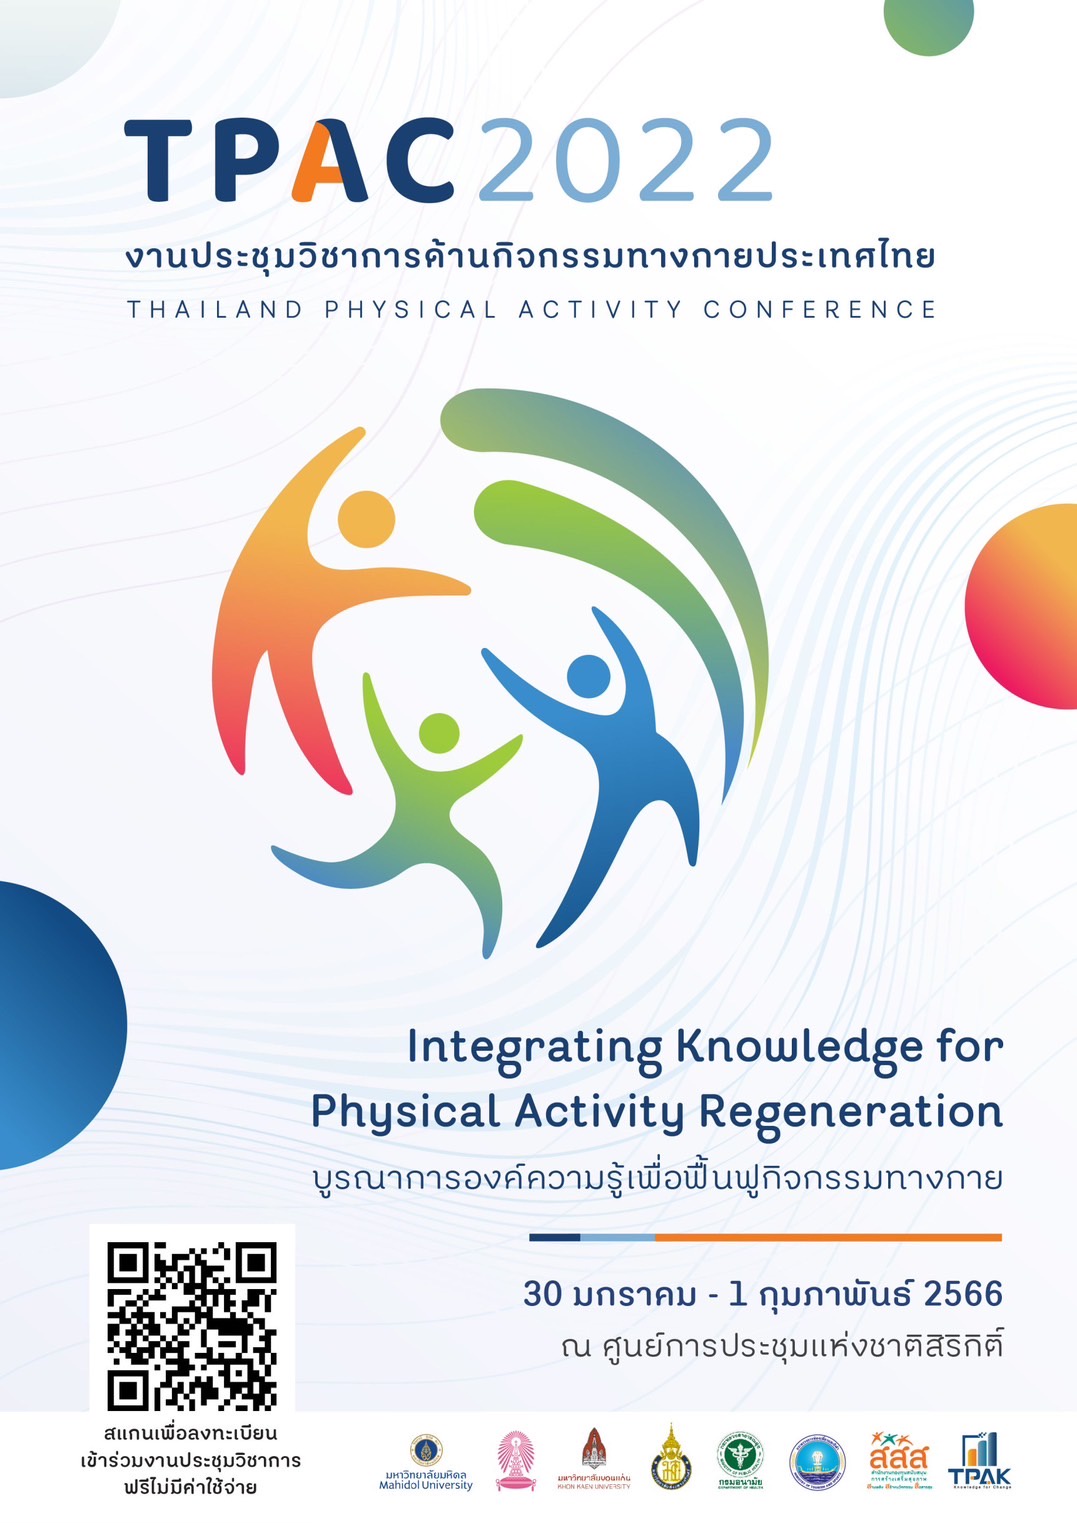 TPAK มหิดล เชิญชวนร่วมงานประชุมวิชาการด้านกิจกรรมทางกายประเทศไทย ครั้งที่ 1 หัวข้อ บูรณาการองค์ความรู้เพื่อฟื้นฟูกิจกรรมทางกาย